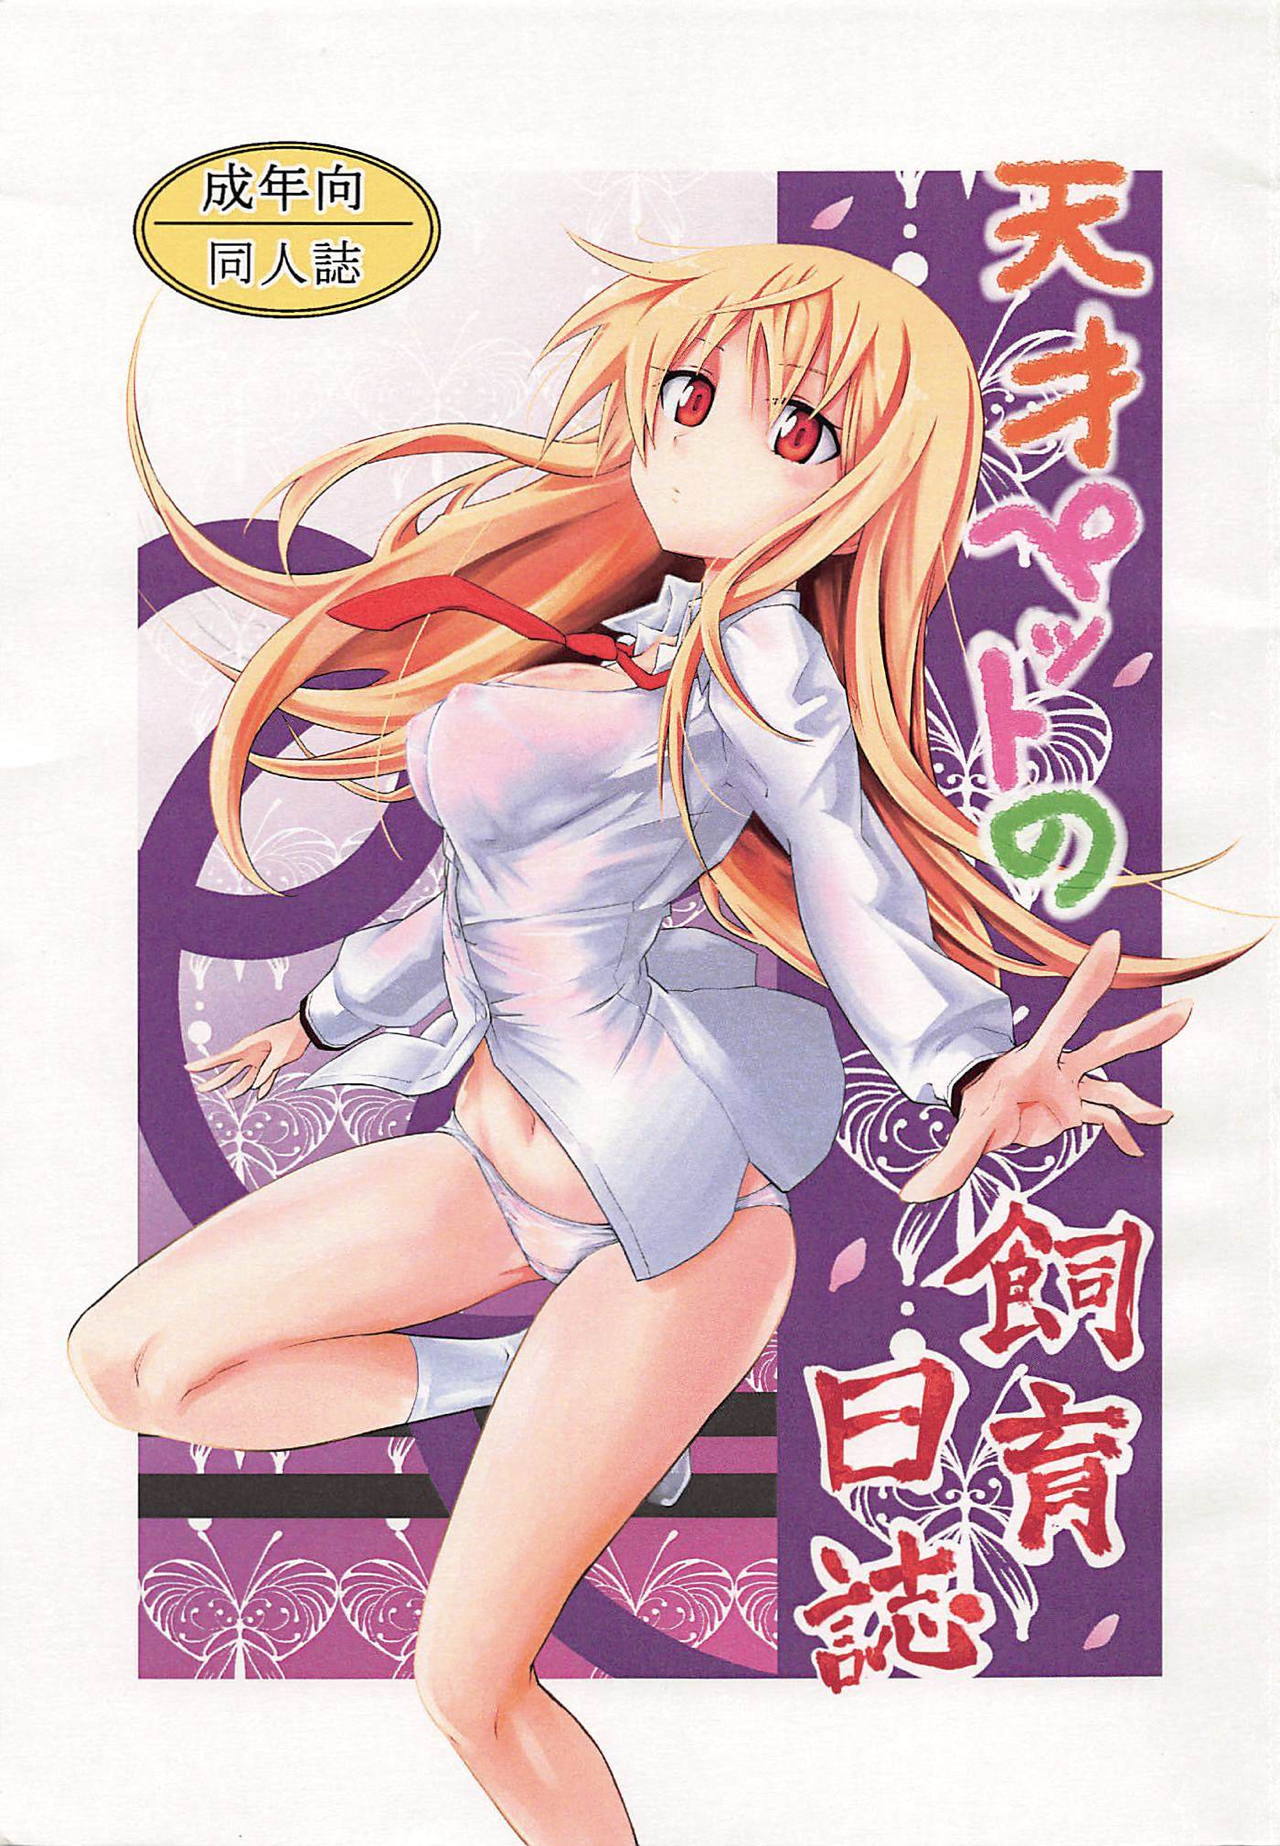 Anime Pets Porn - Read âŒsakurasou no pet na kanojo âŒ Porn comics Â» Hentai porns - Manga and  porncomics xxx 1 hentai comics